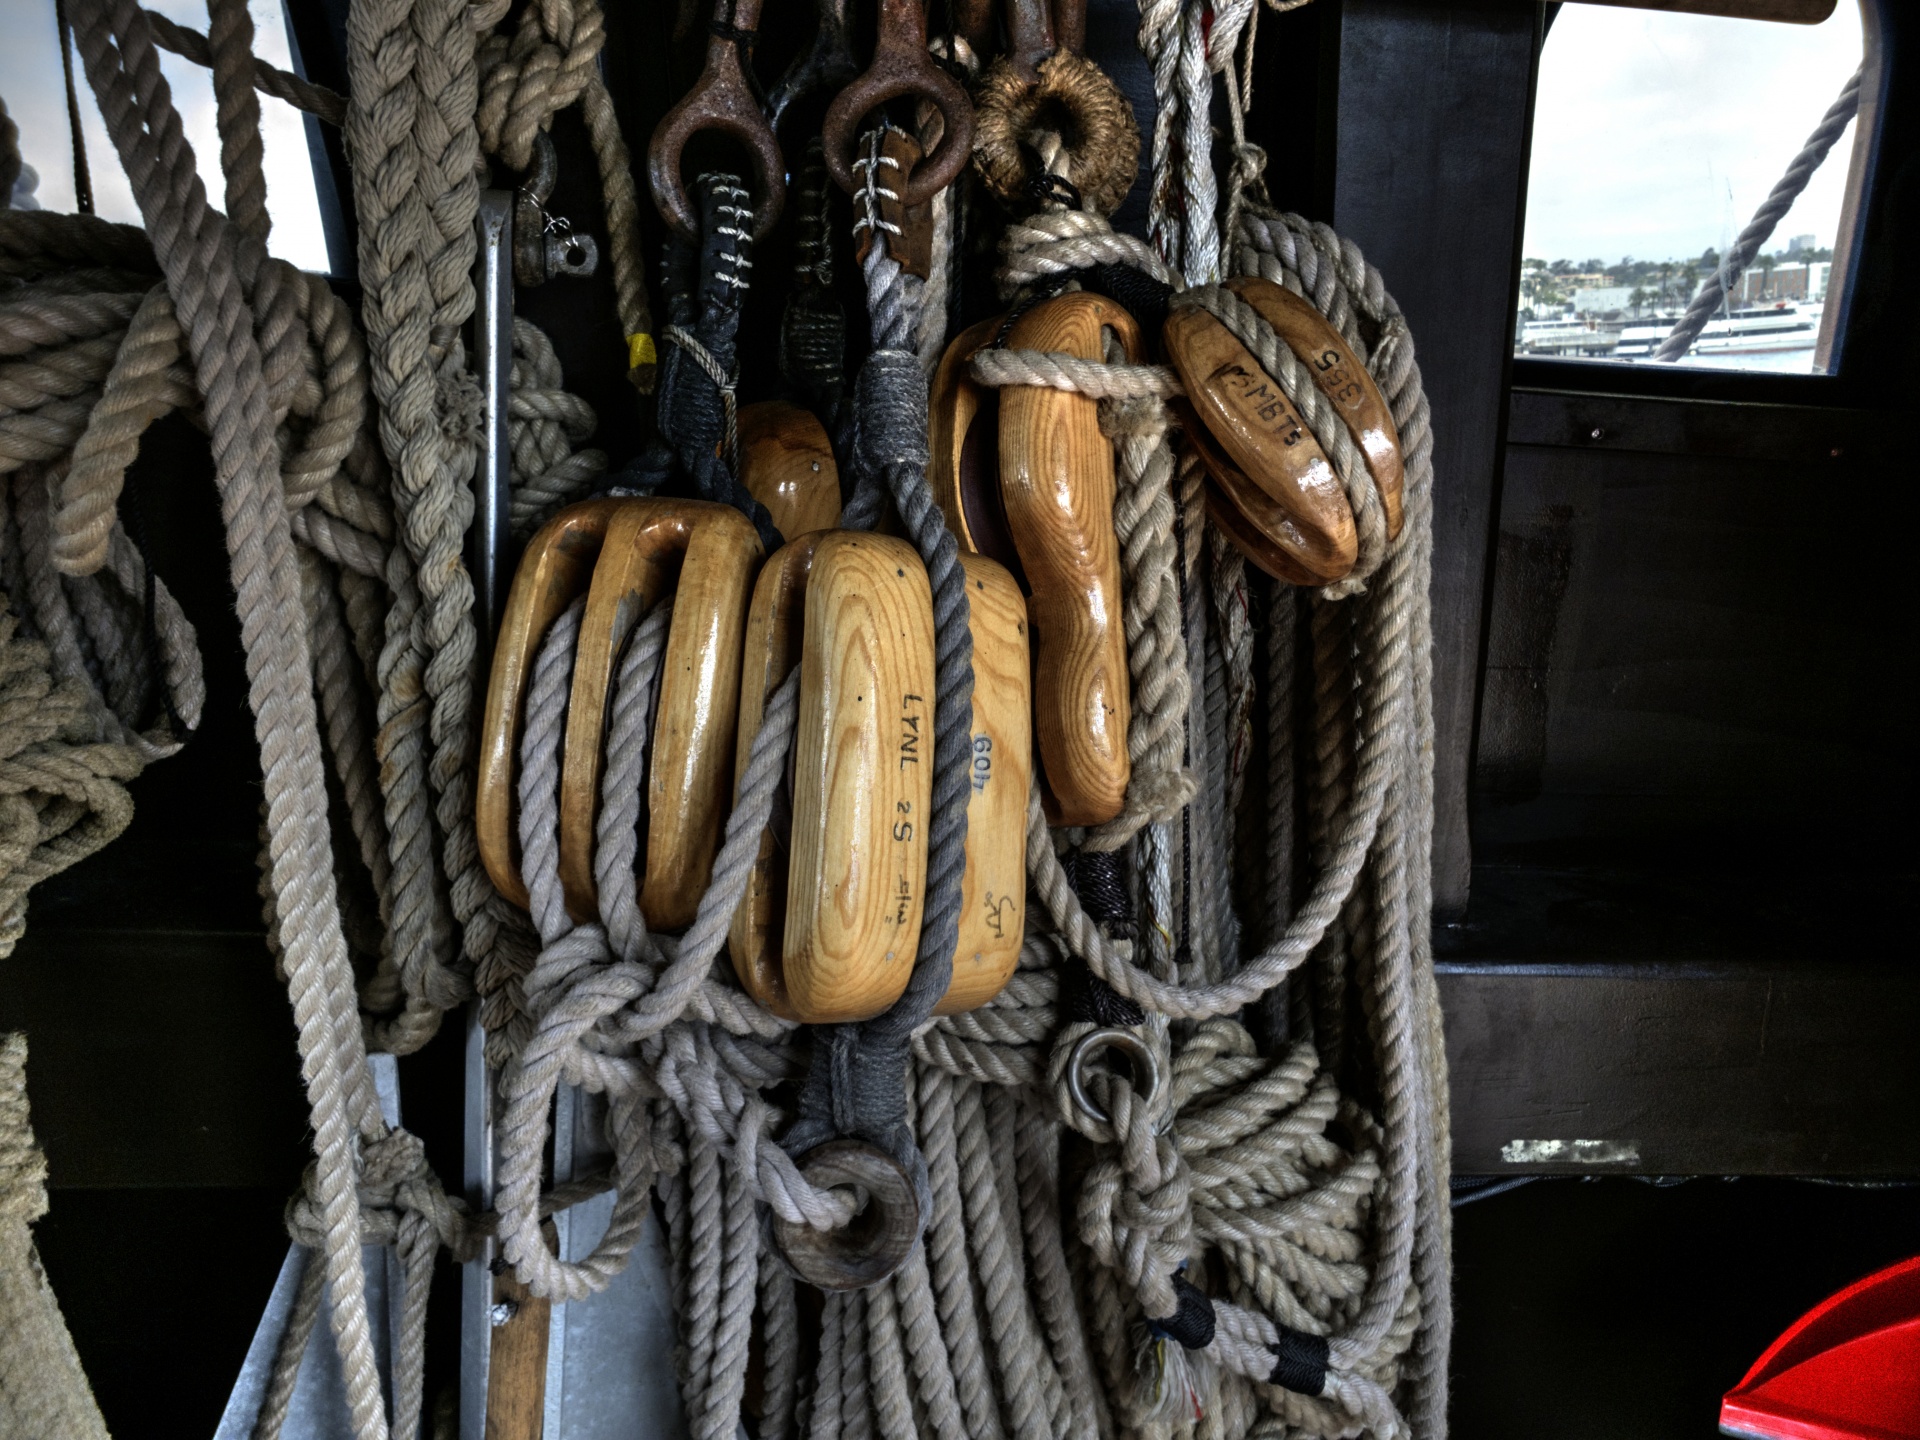 Mastro e cordas de navios interiores